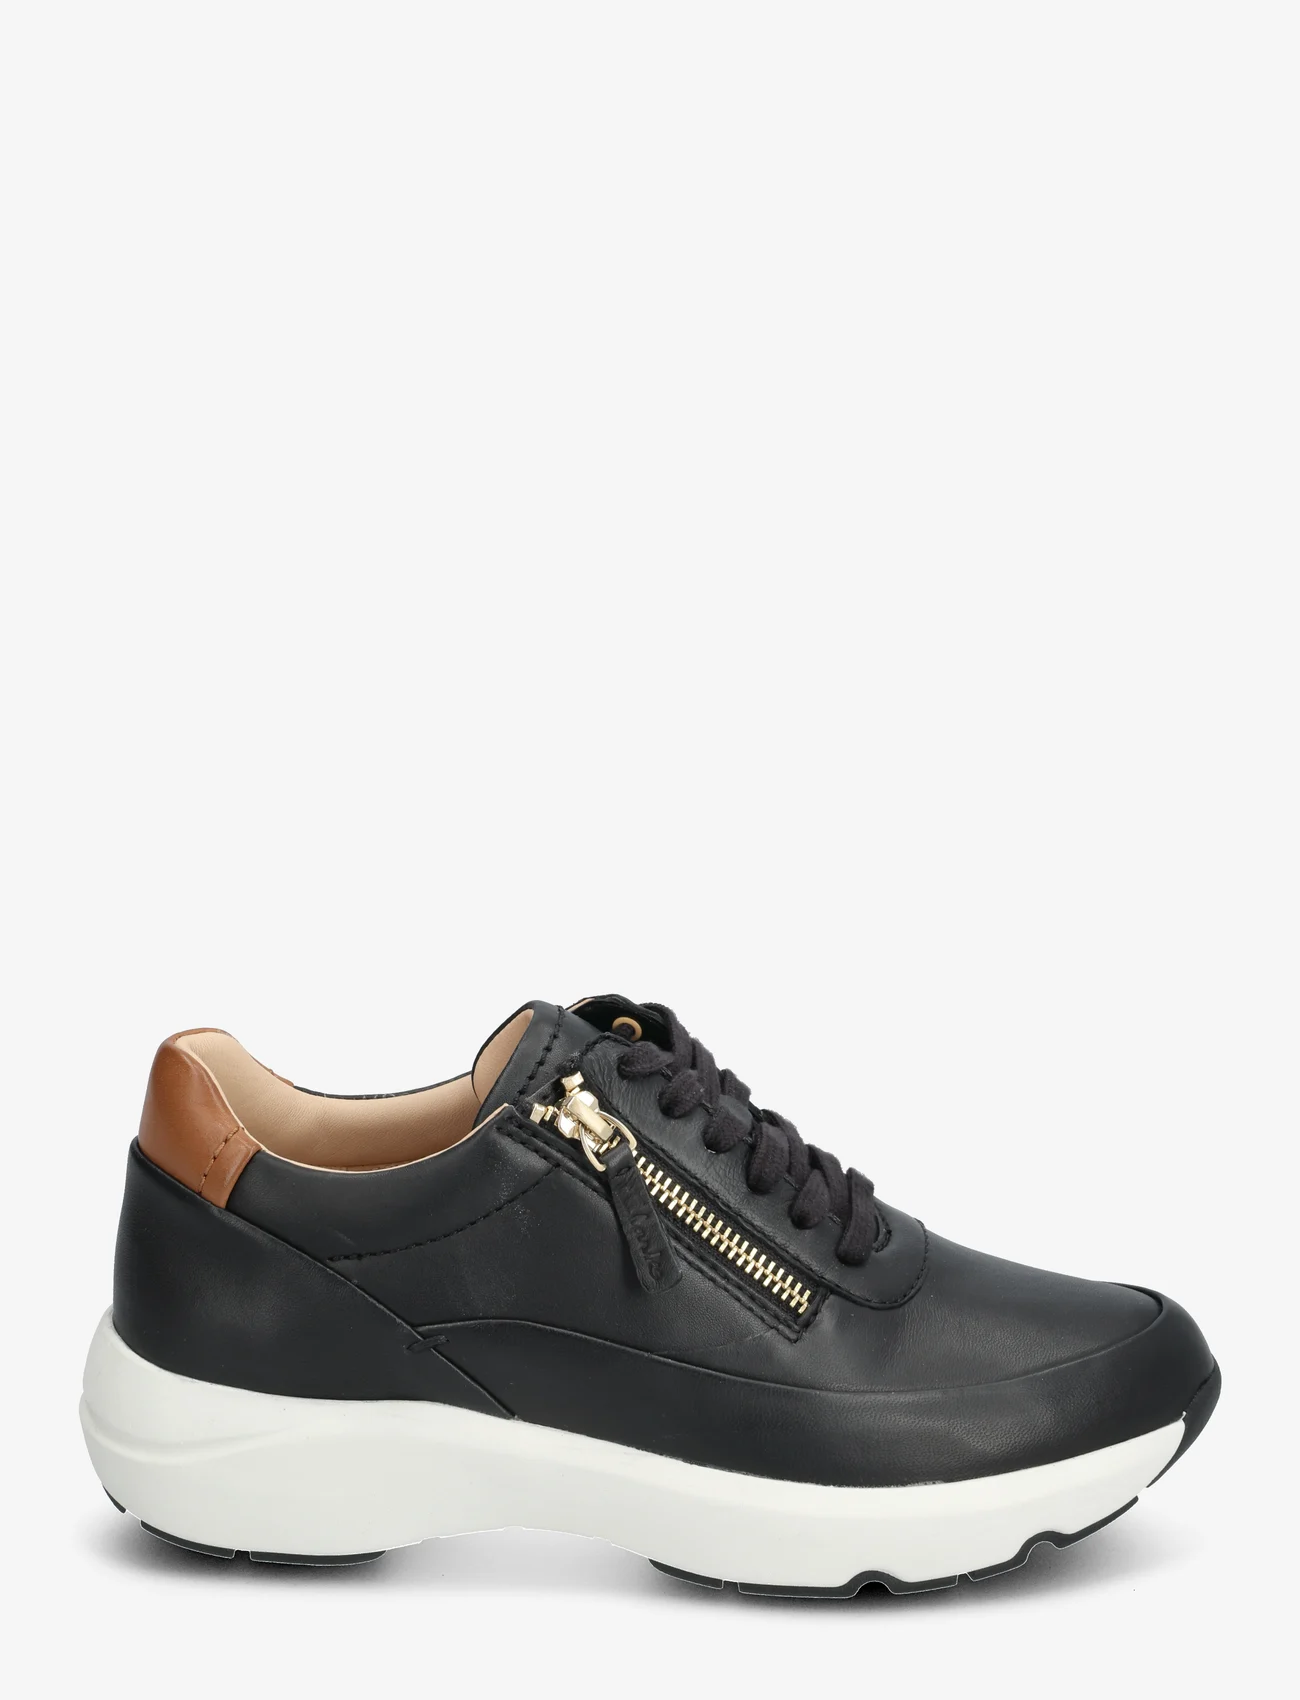 Clarks - Tivoli Zip D - low top sneakers - 1216 black leather - 1